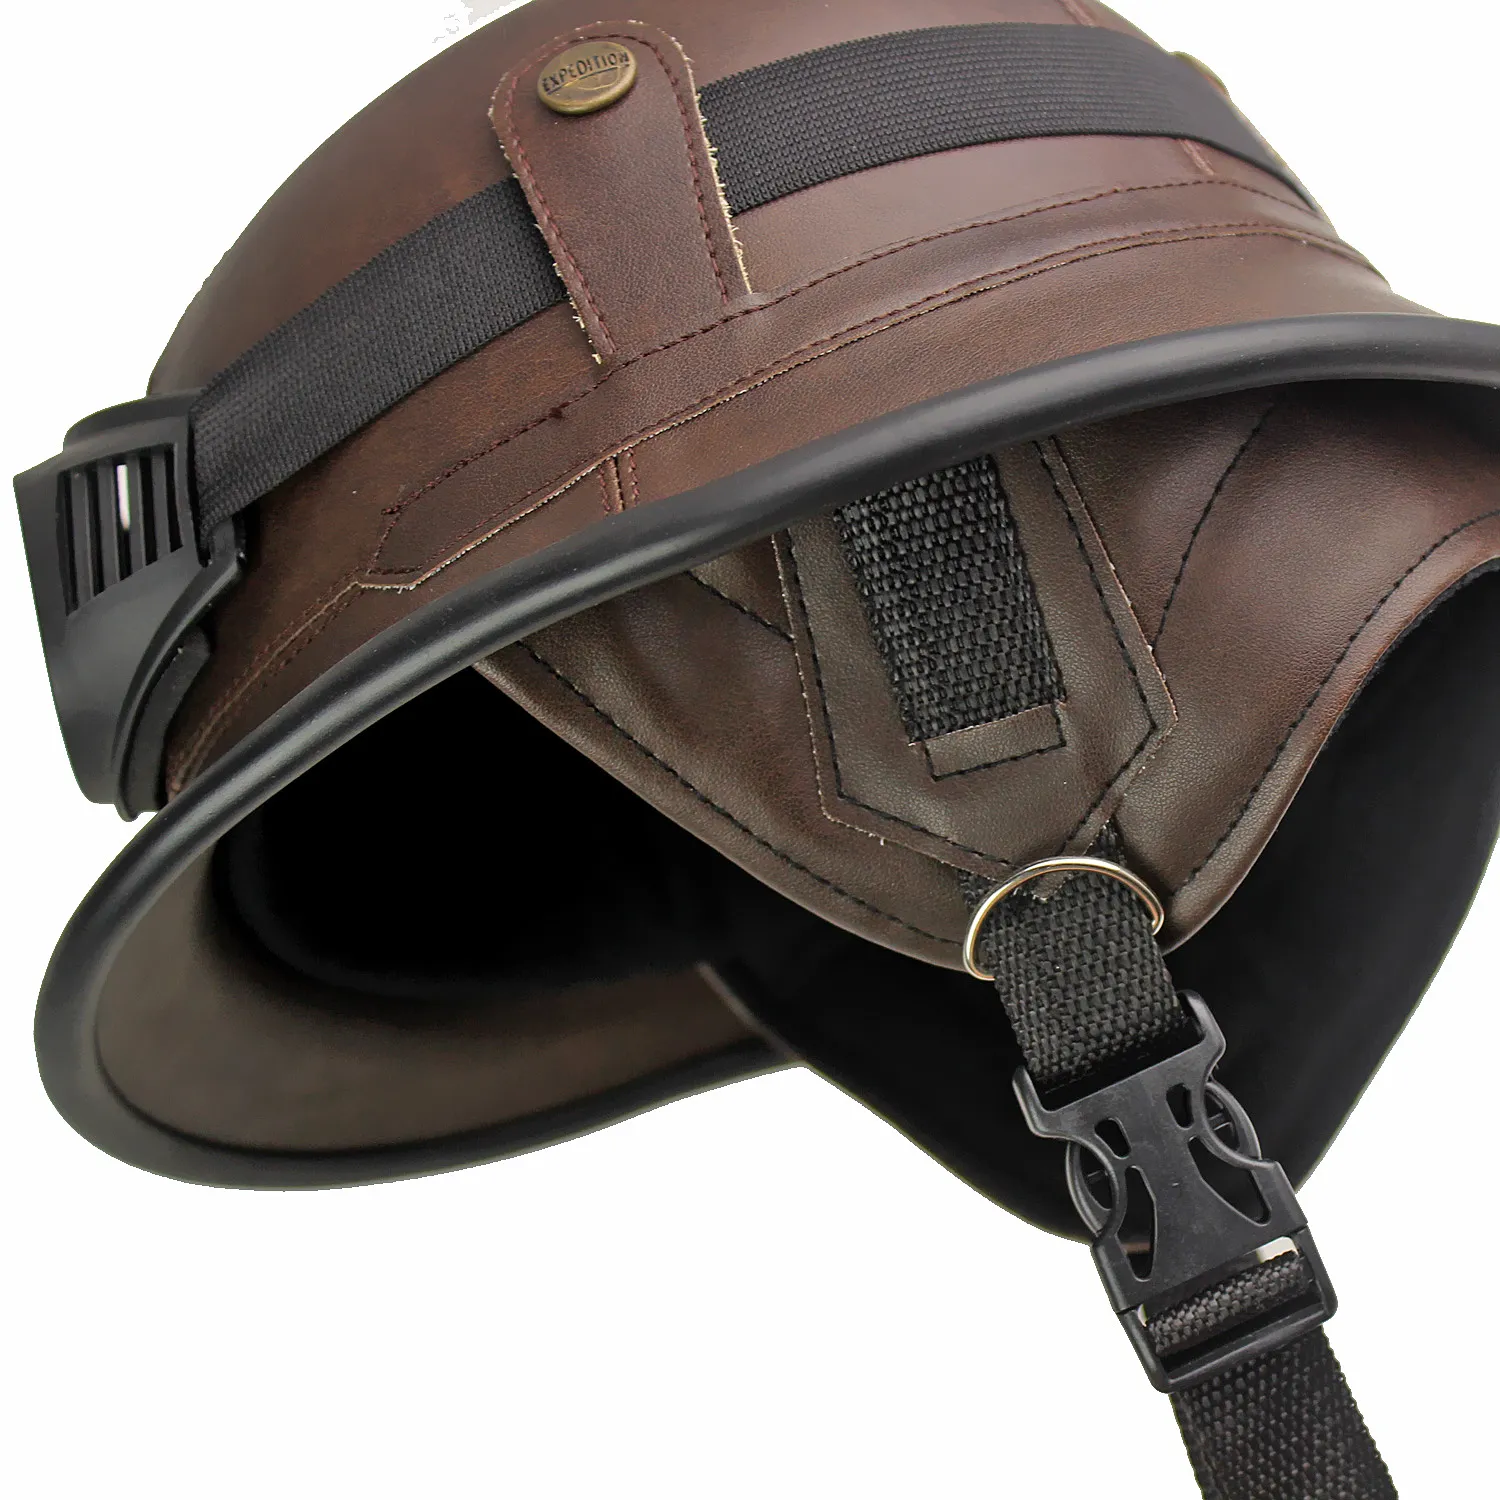 Cedot padrão de segurança da motocicleta fosco alemão meia face capaceteabs capacete protetor de alto desempenho com óculos legais8254582